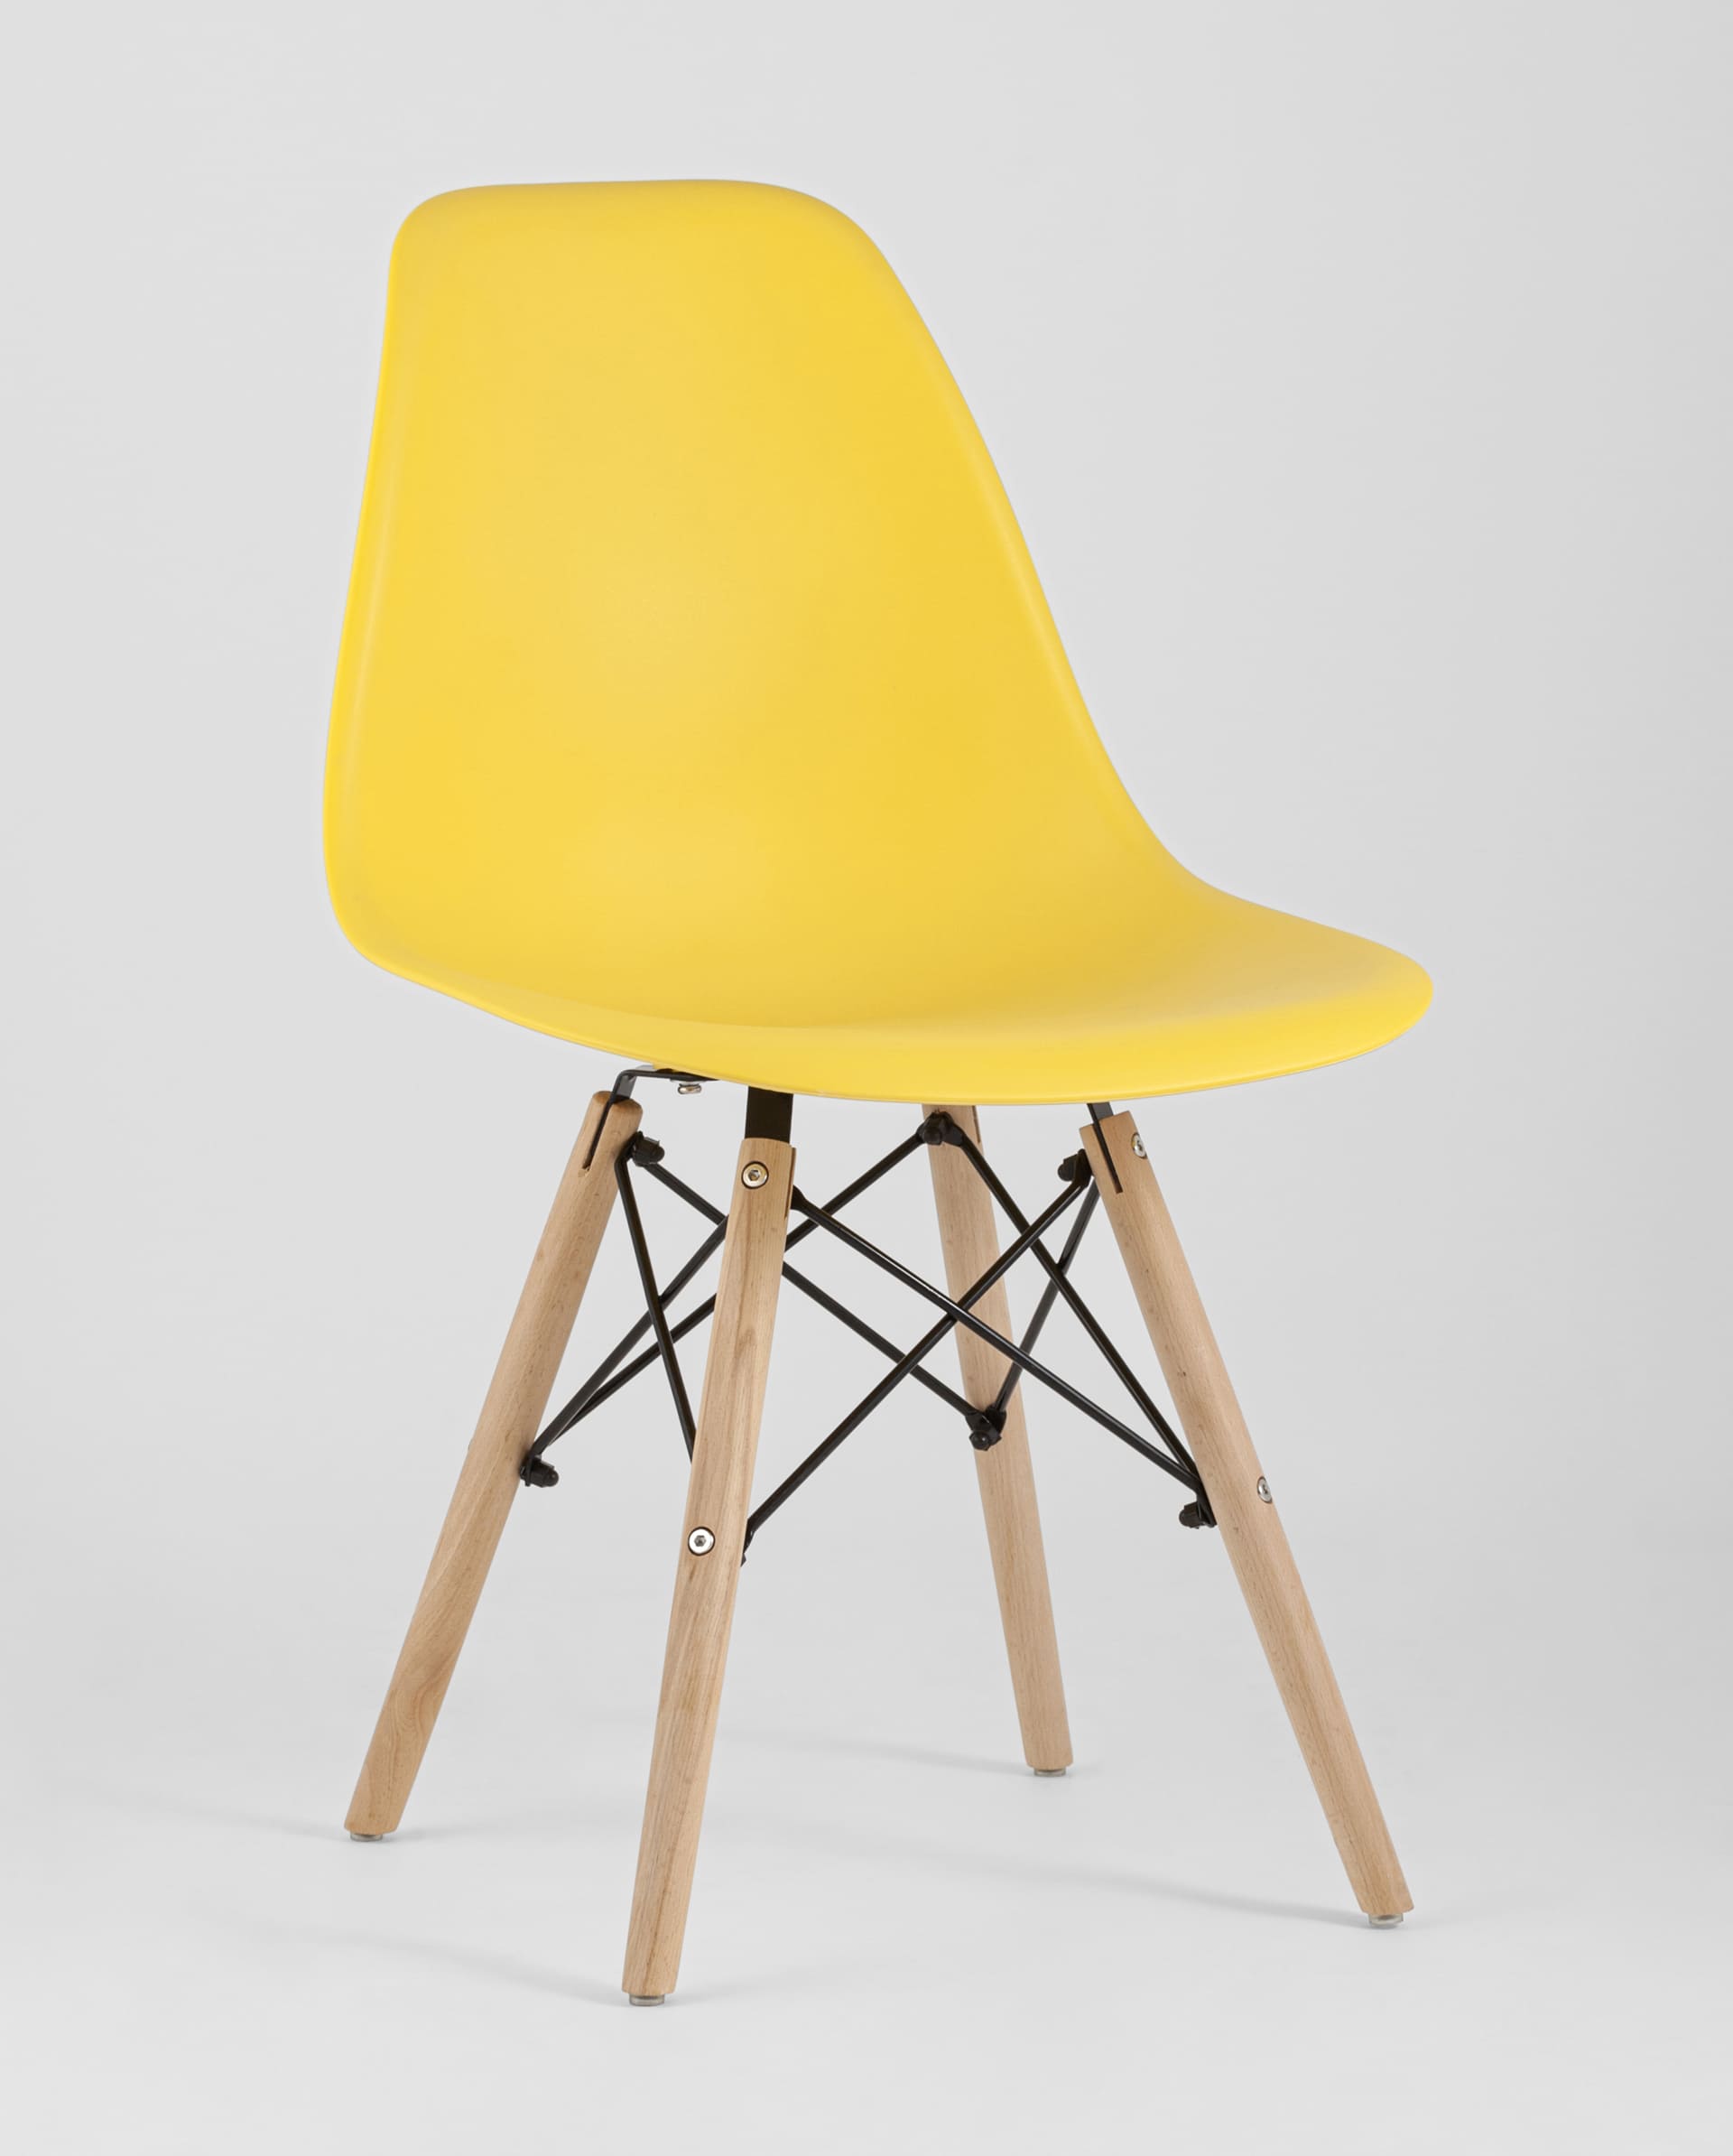 Мягкий желтый стул у взрослого - 81 фото